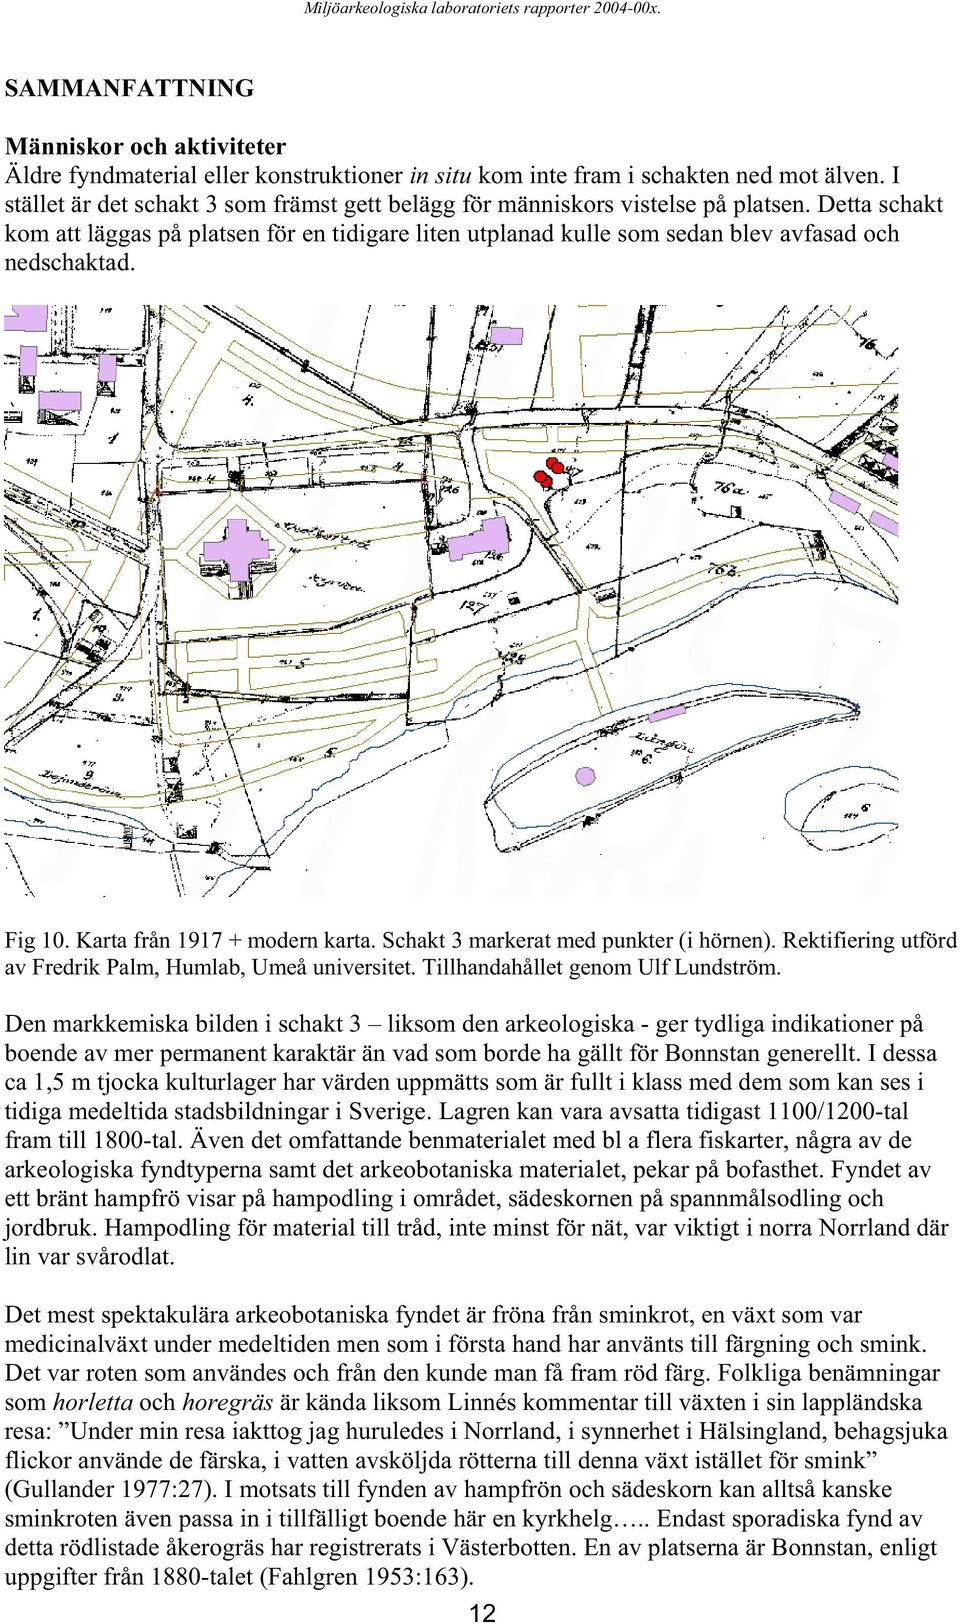 Fig 10. Karta från 1917 + modern karta. Schakt 3 markerat med punkter (i hörnen). Rektifiering utförd av Fredrik Palm, Humlab, Umeå universitet. Tillhandahållet genom Ulf Lundström.